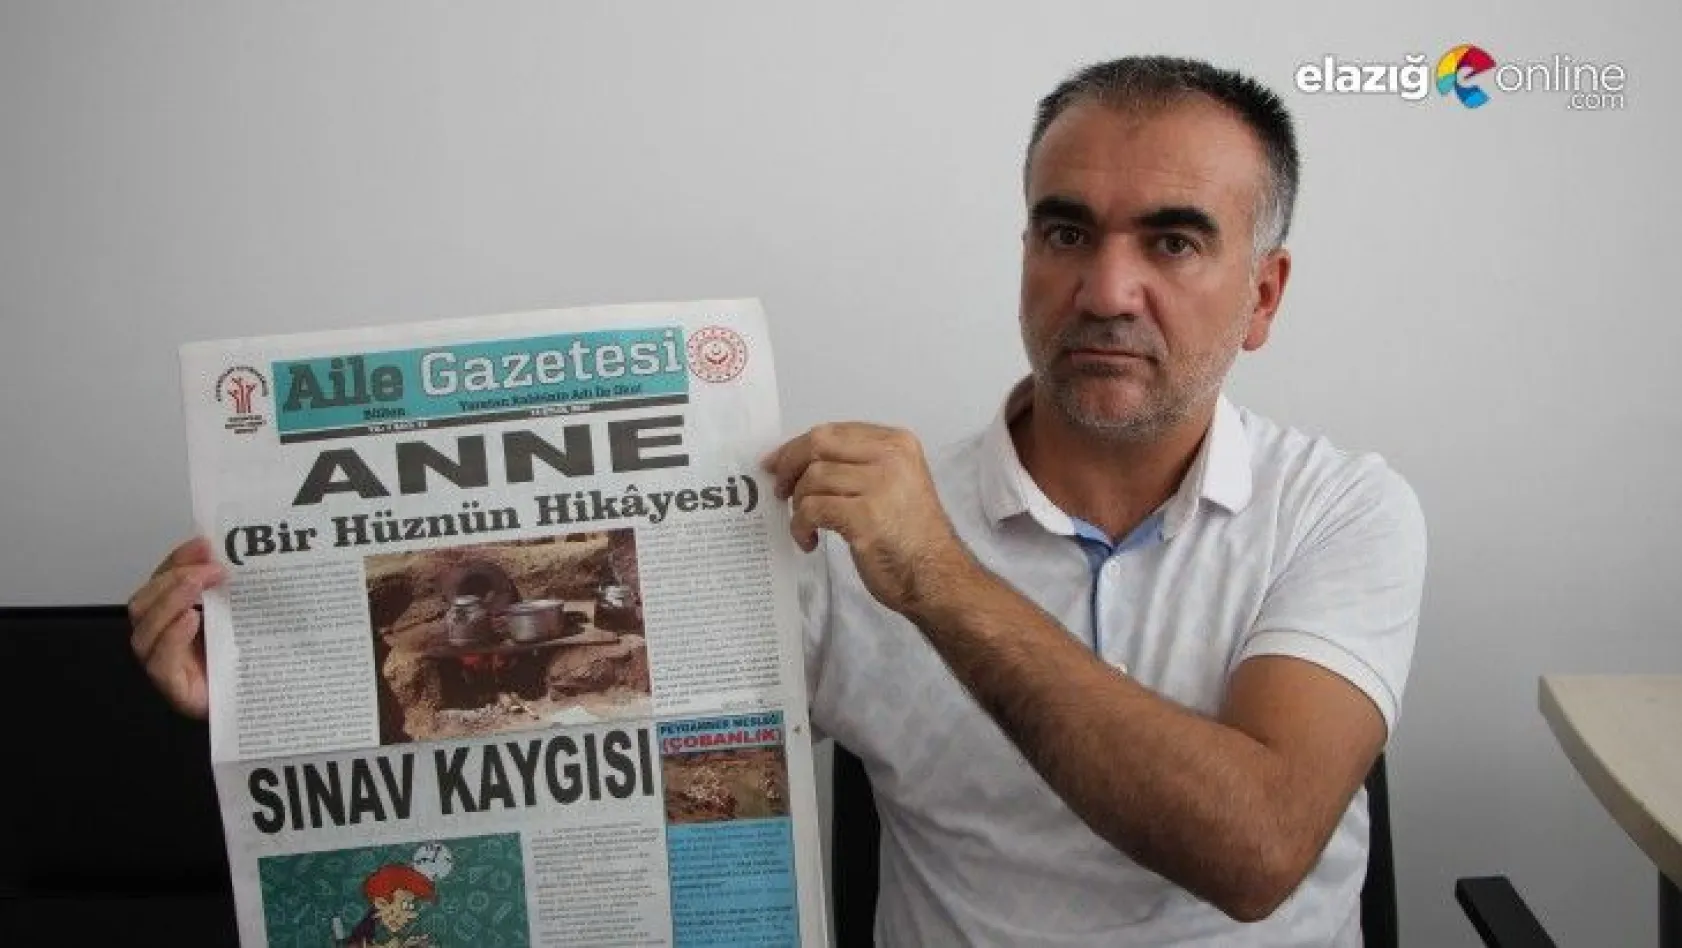 Elazığ'da Aile Gazetesi ile aile ve topluma destek